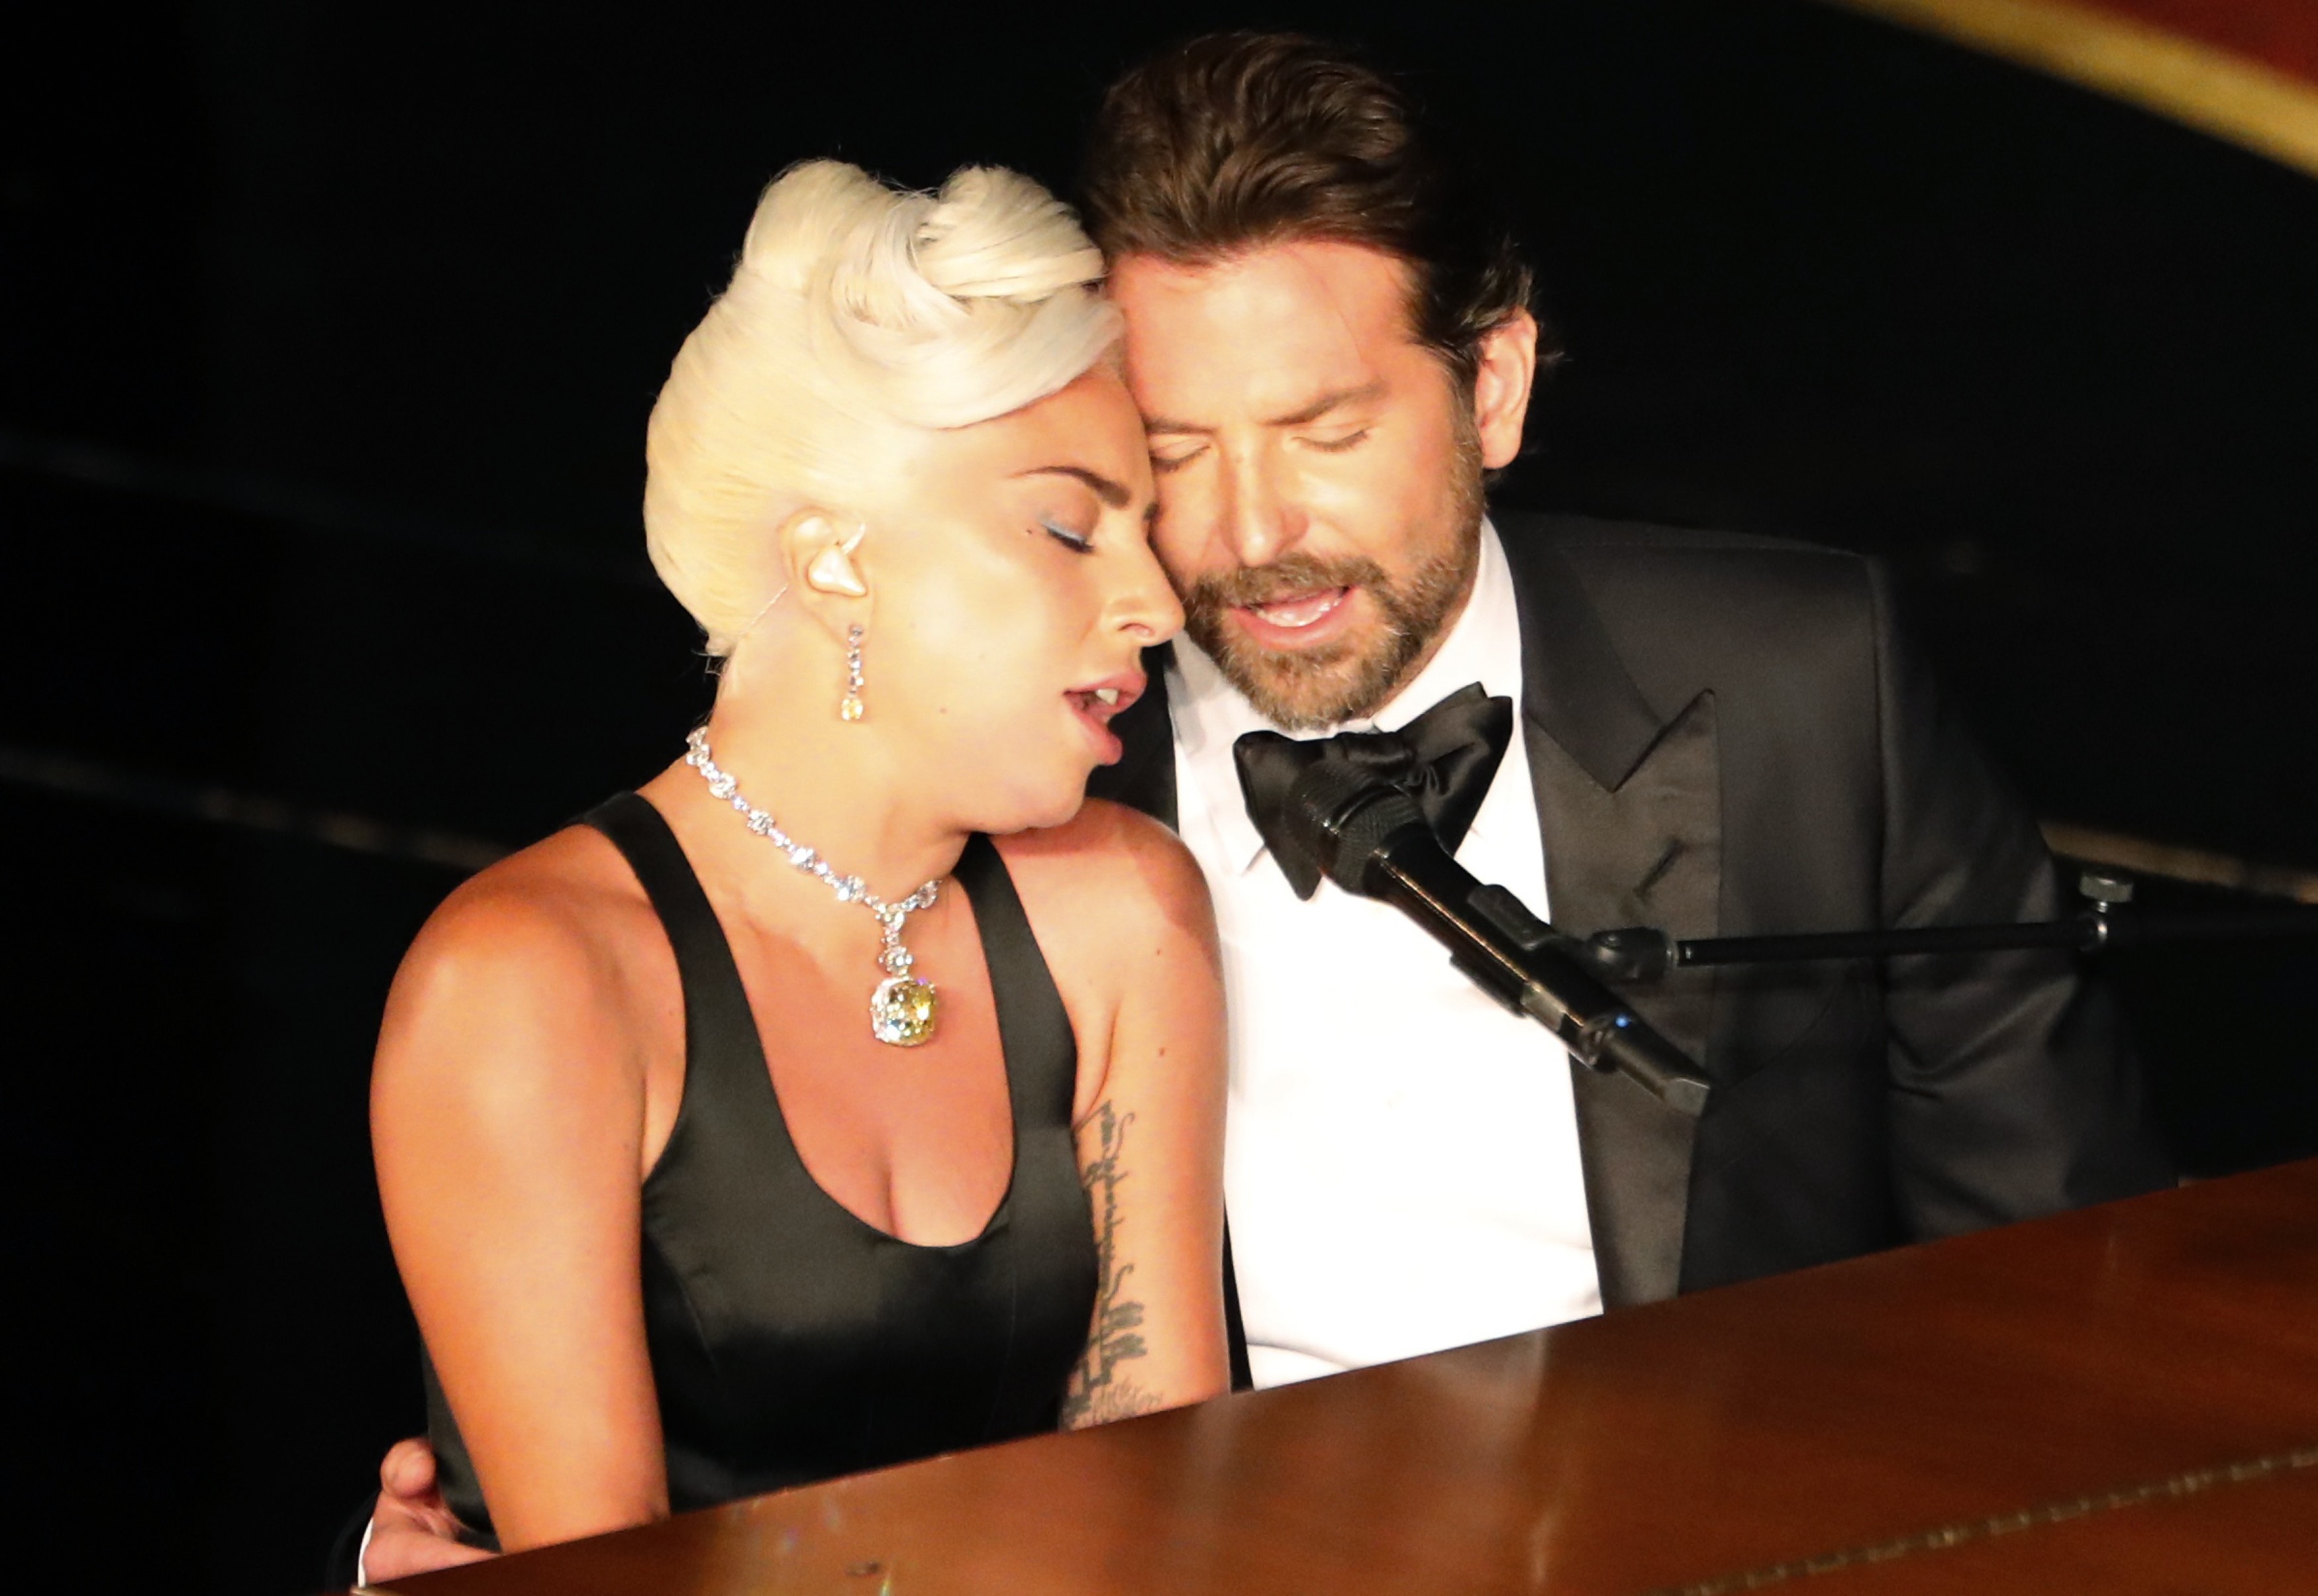 Siguen los rumores… ¿Lady Gaga y Bradley Cooper ya viven juntos?